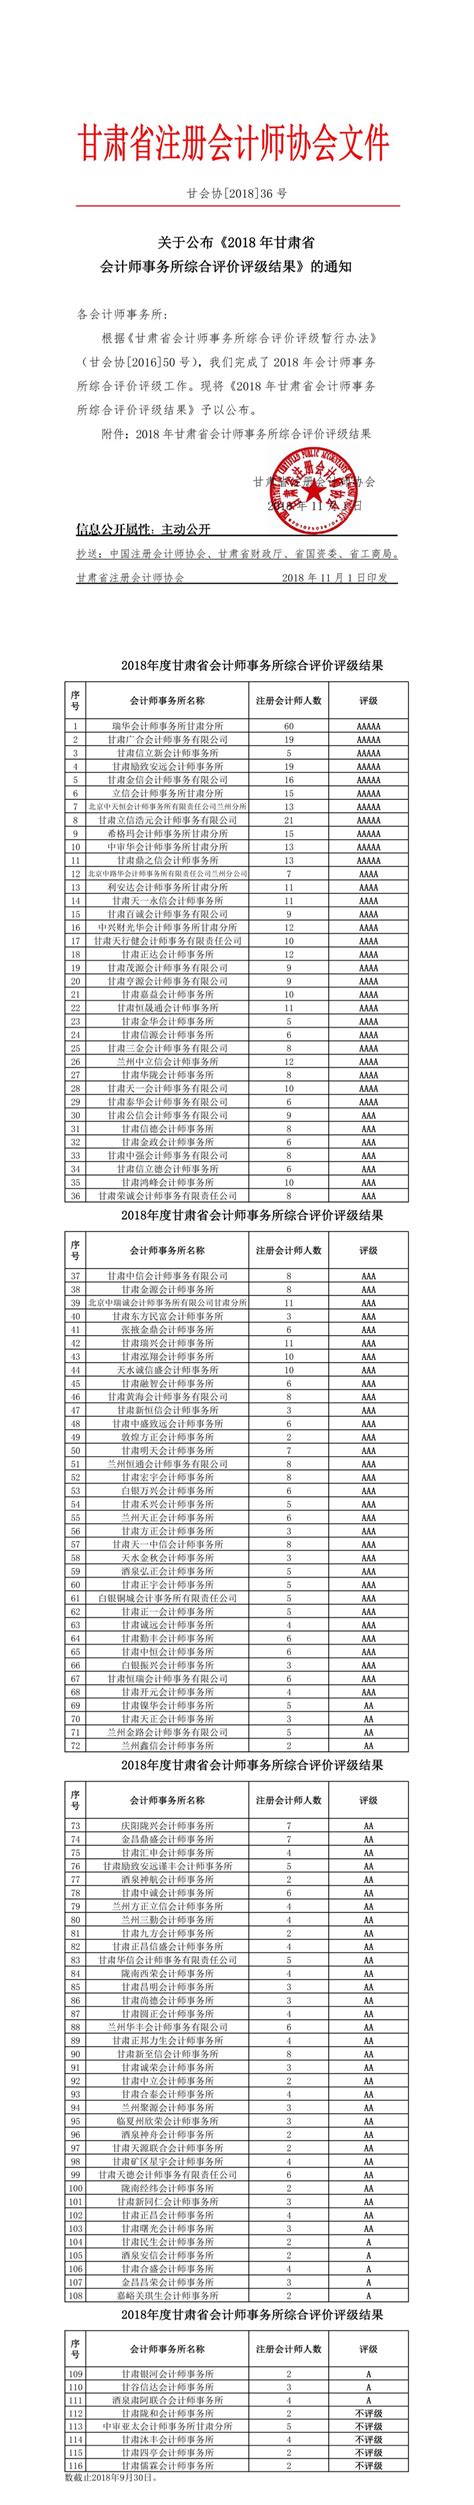 关于公布《2018年甘肃省会计师事务所综合评价评级结果》的通知 - 甘肃省注册会计师协会